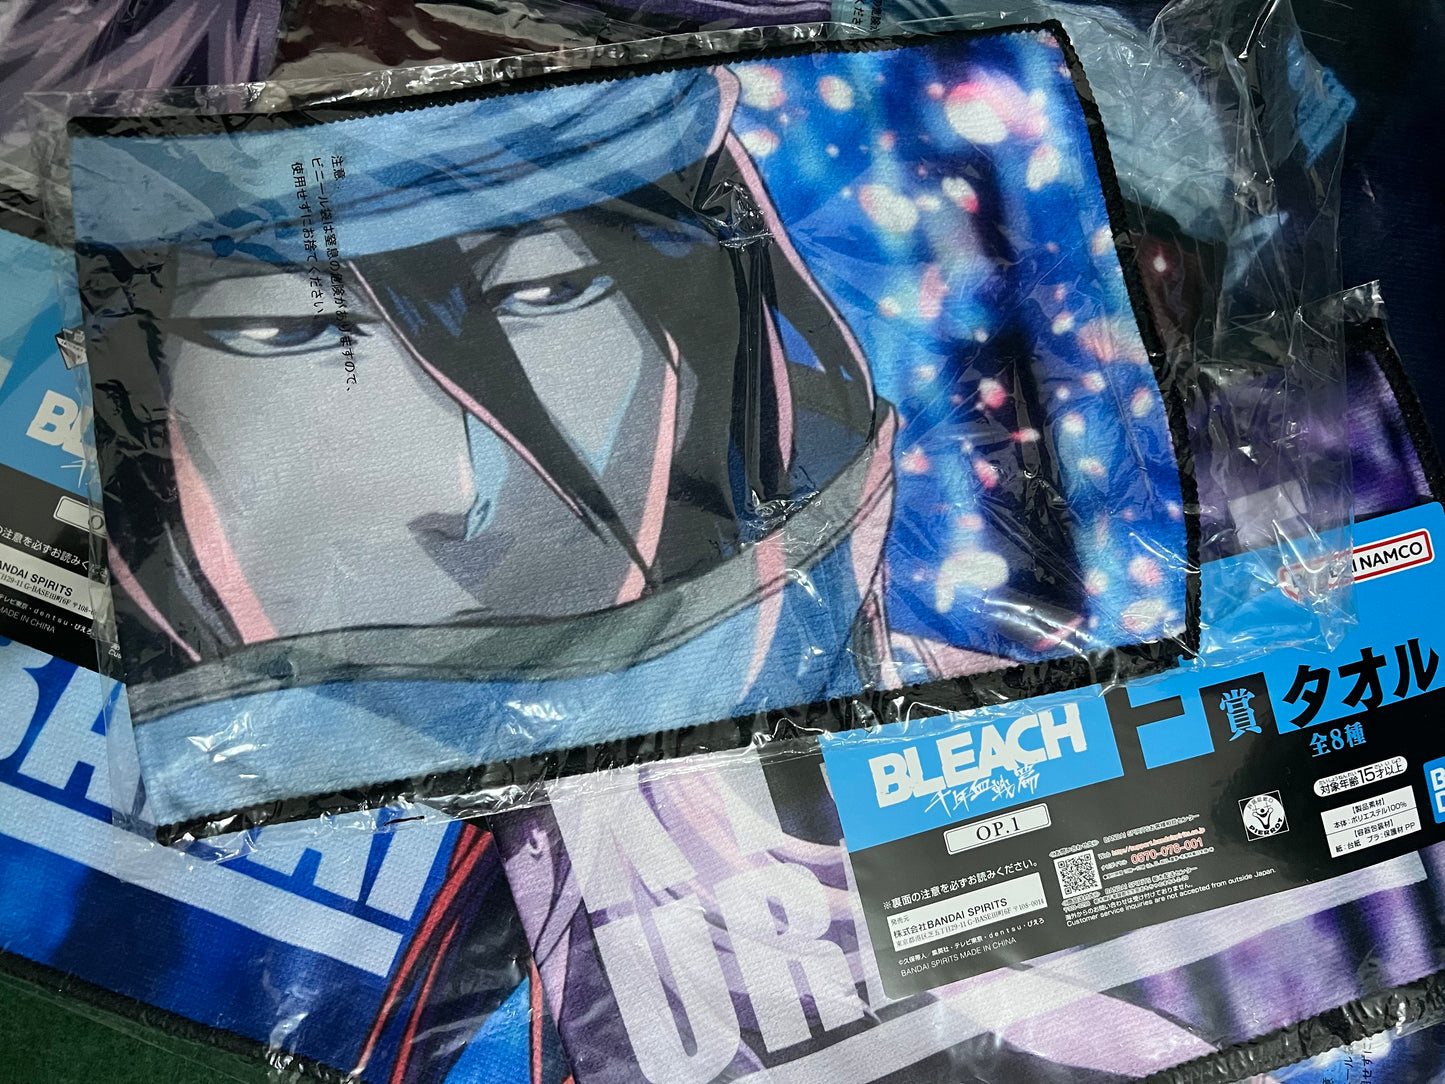 Bleach: Ichiban Kuji Prize Towels (Random)